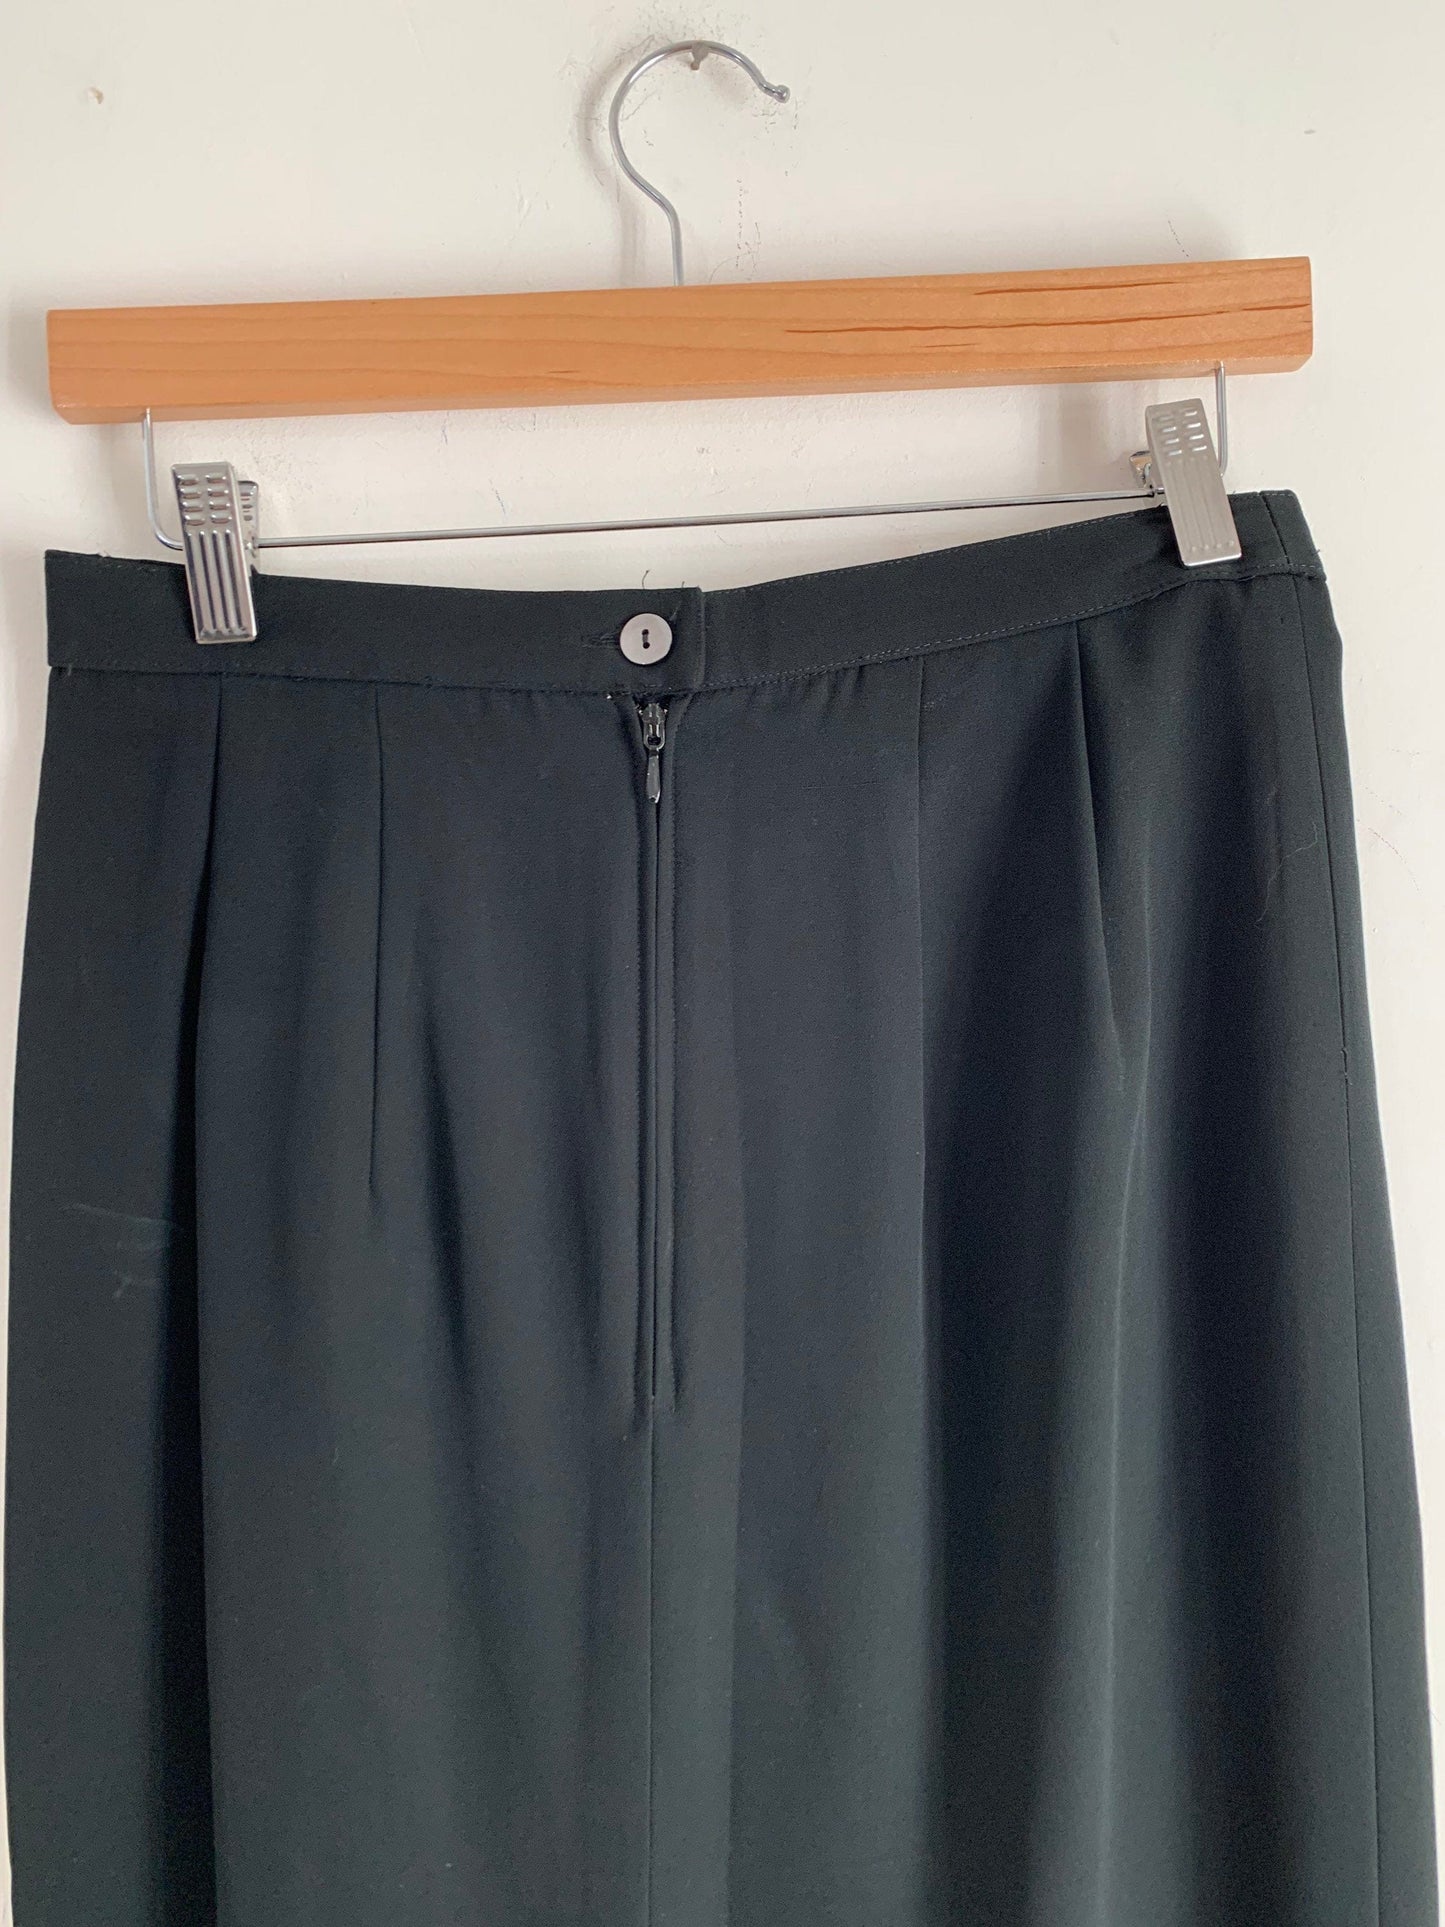 Vintage Black Pencil Skirt Knee Length  UK Size 8-10